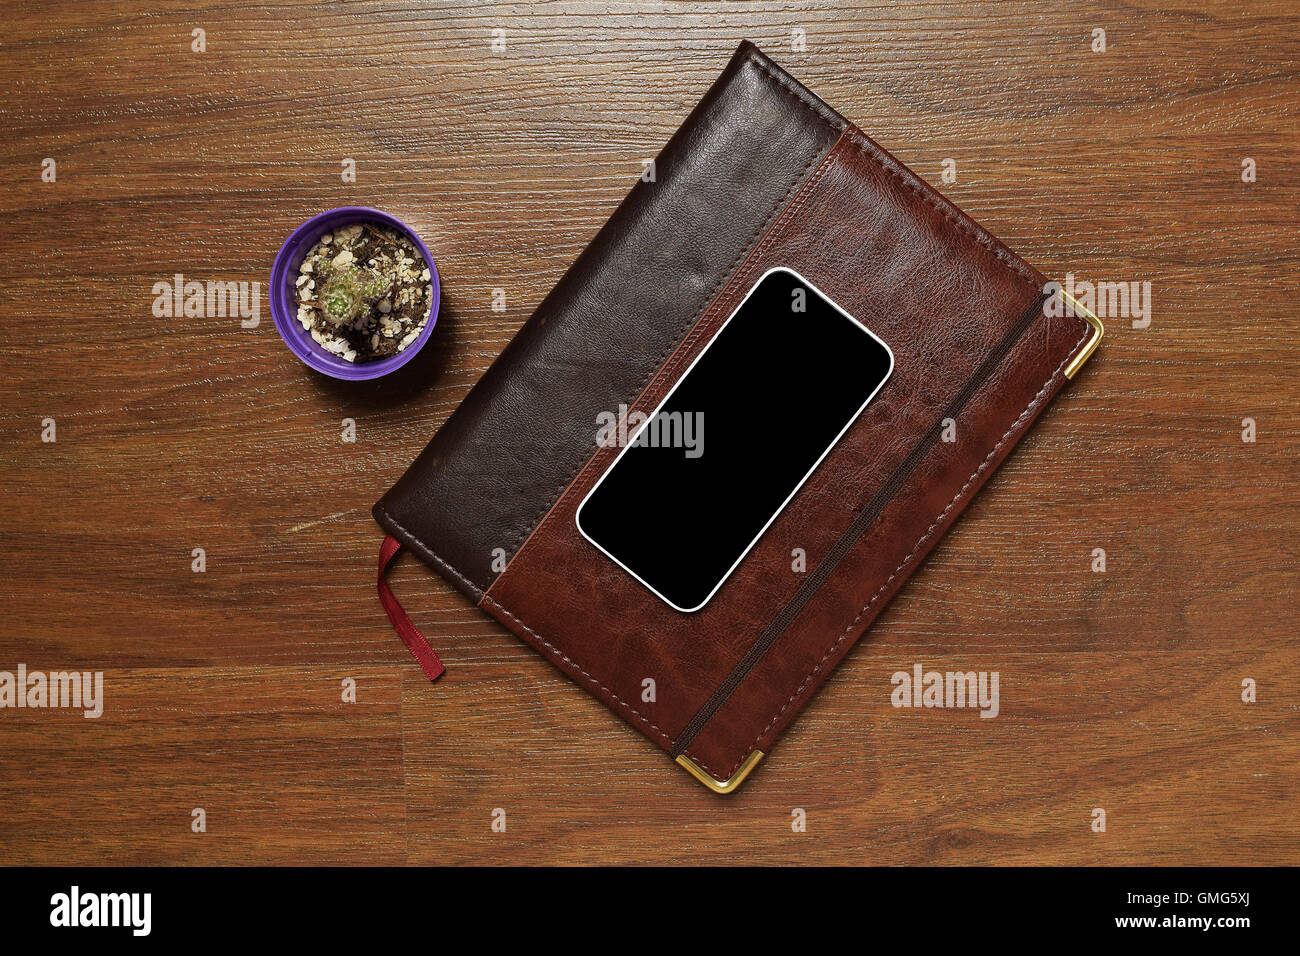 Vue du dessus de l'agenda / agenda journalier et d'un téléphone mobile, sur le bureau en bois. Home office concept. Banque D'Images